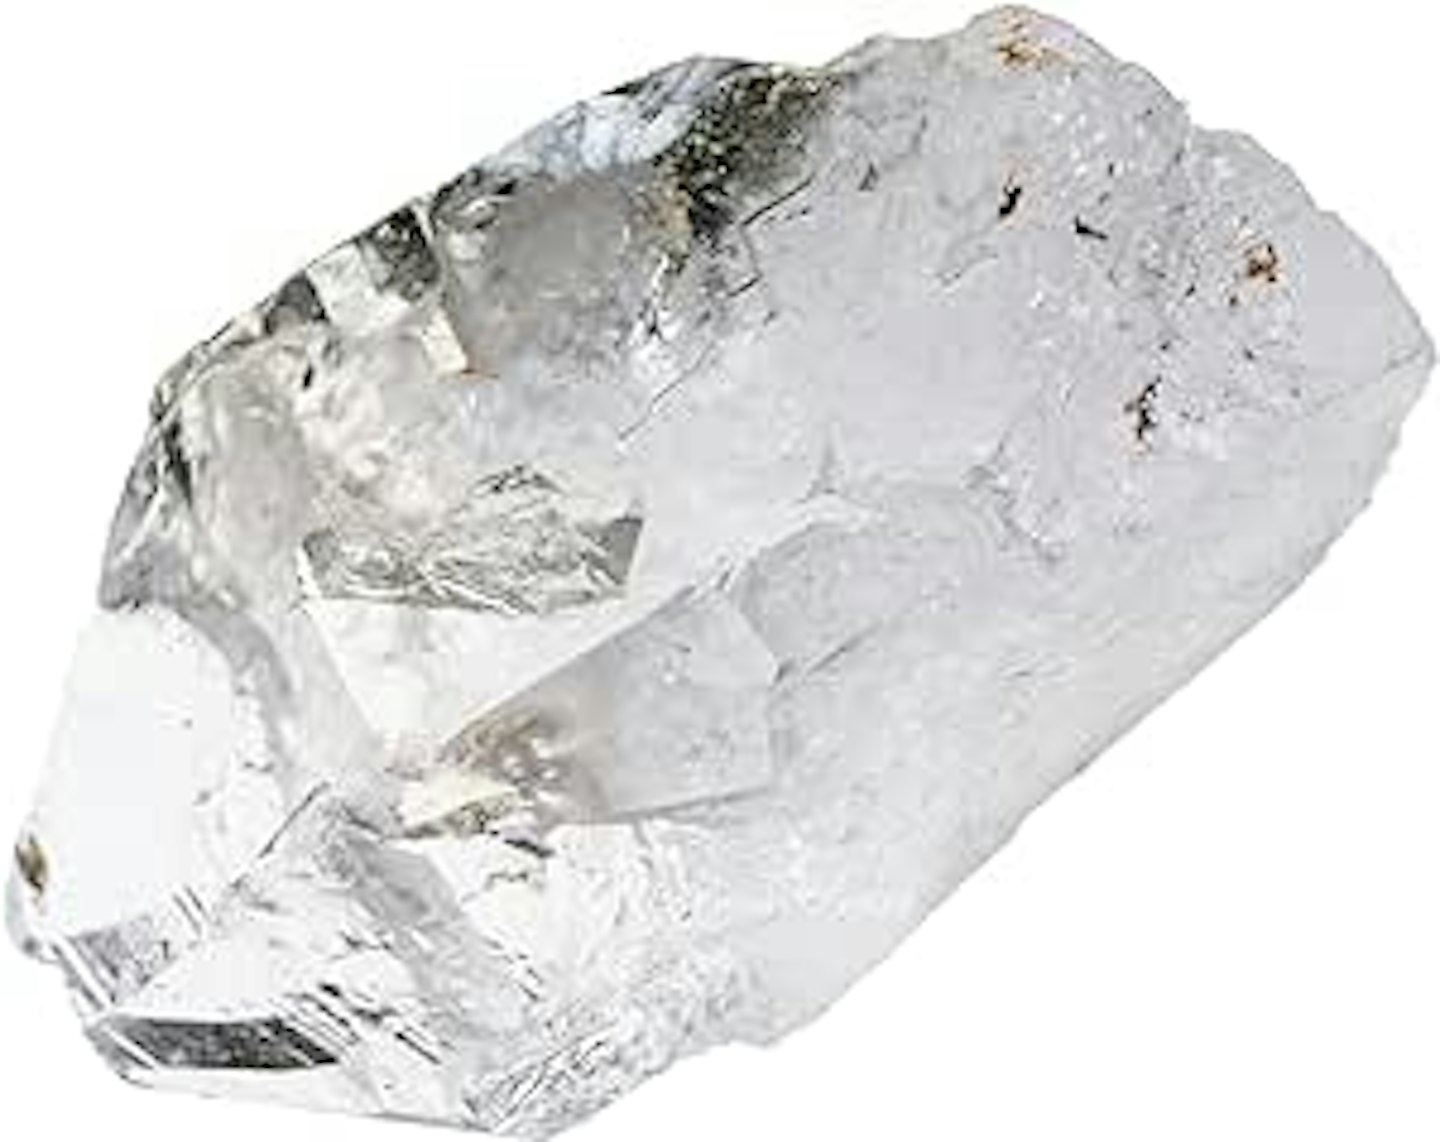 Clear Quartz Raw Crystals